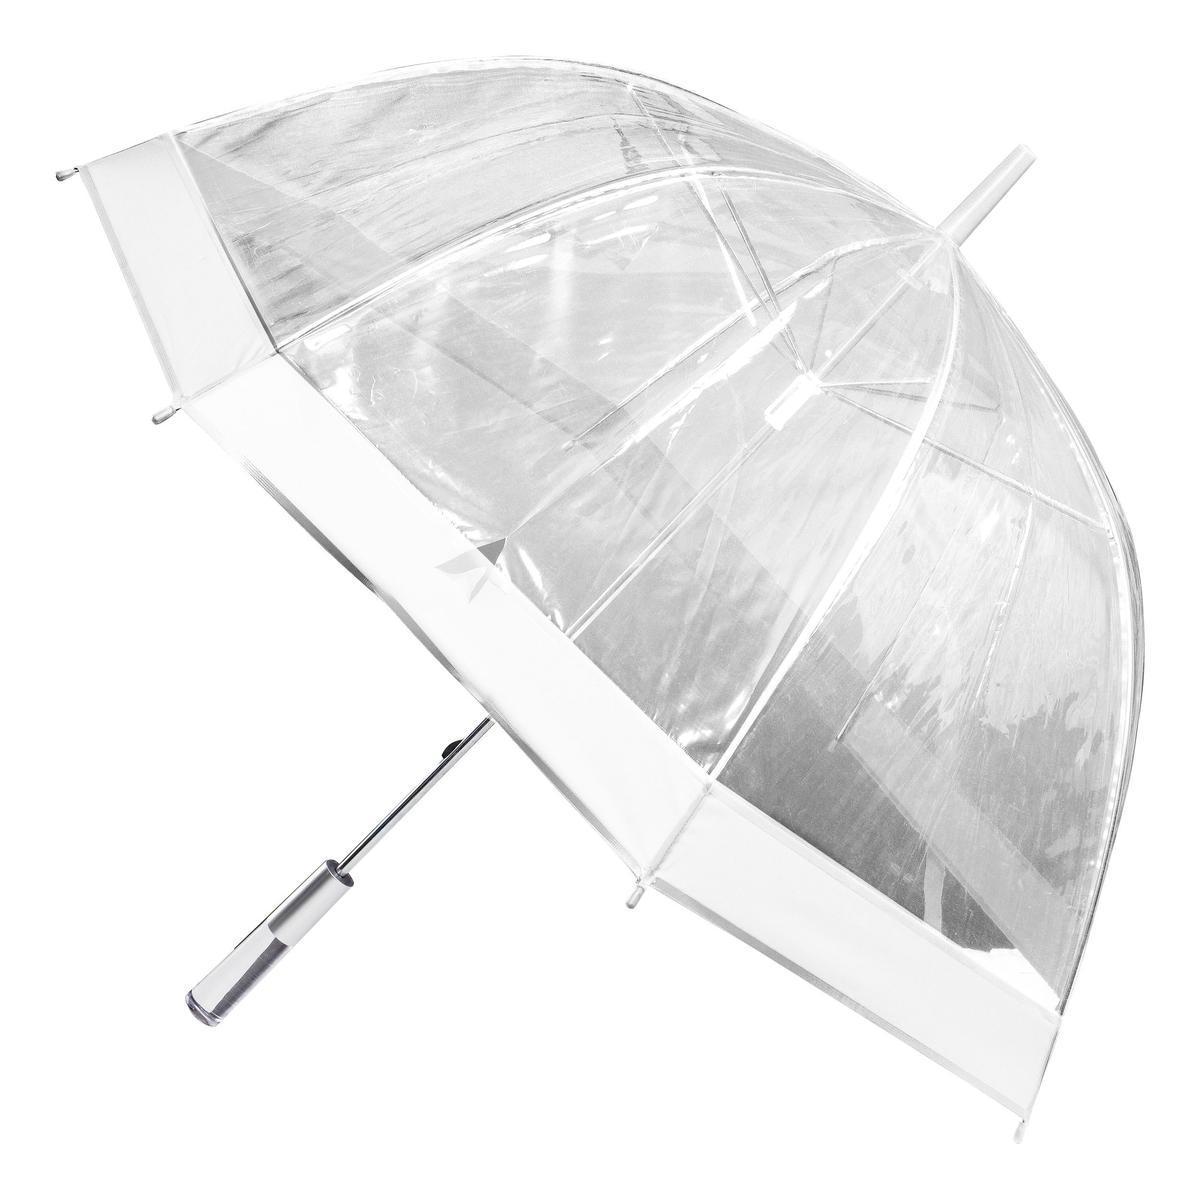 Parapluie long à dôme - L 90 x H 81.8 x l 90 cm - Différents coloris - Blanc, rose, noir, violet - ENTRE TEMPS